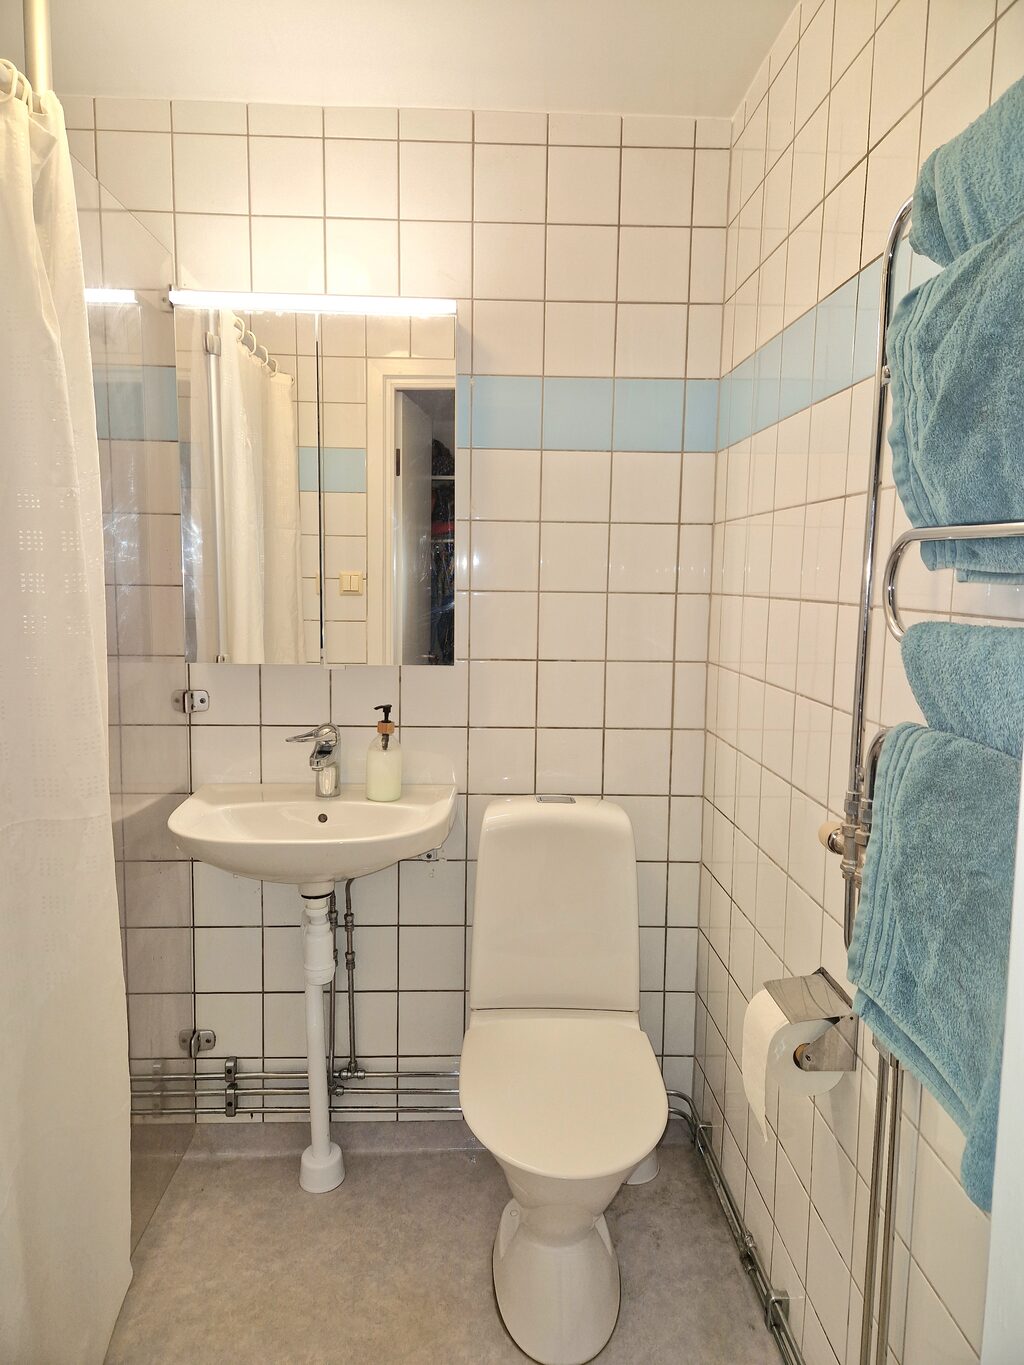 Lägenhetsbyte - Surbrunnsgatan 30, 113 48 Stockholm